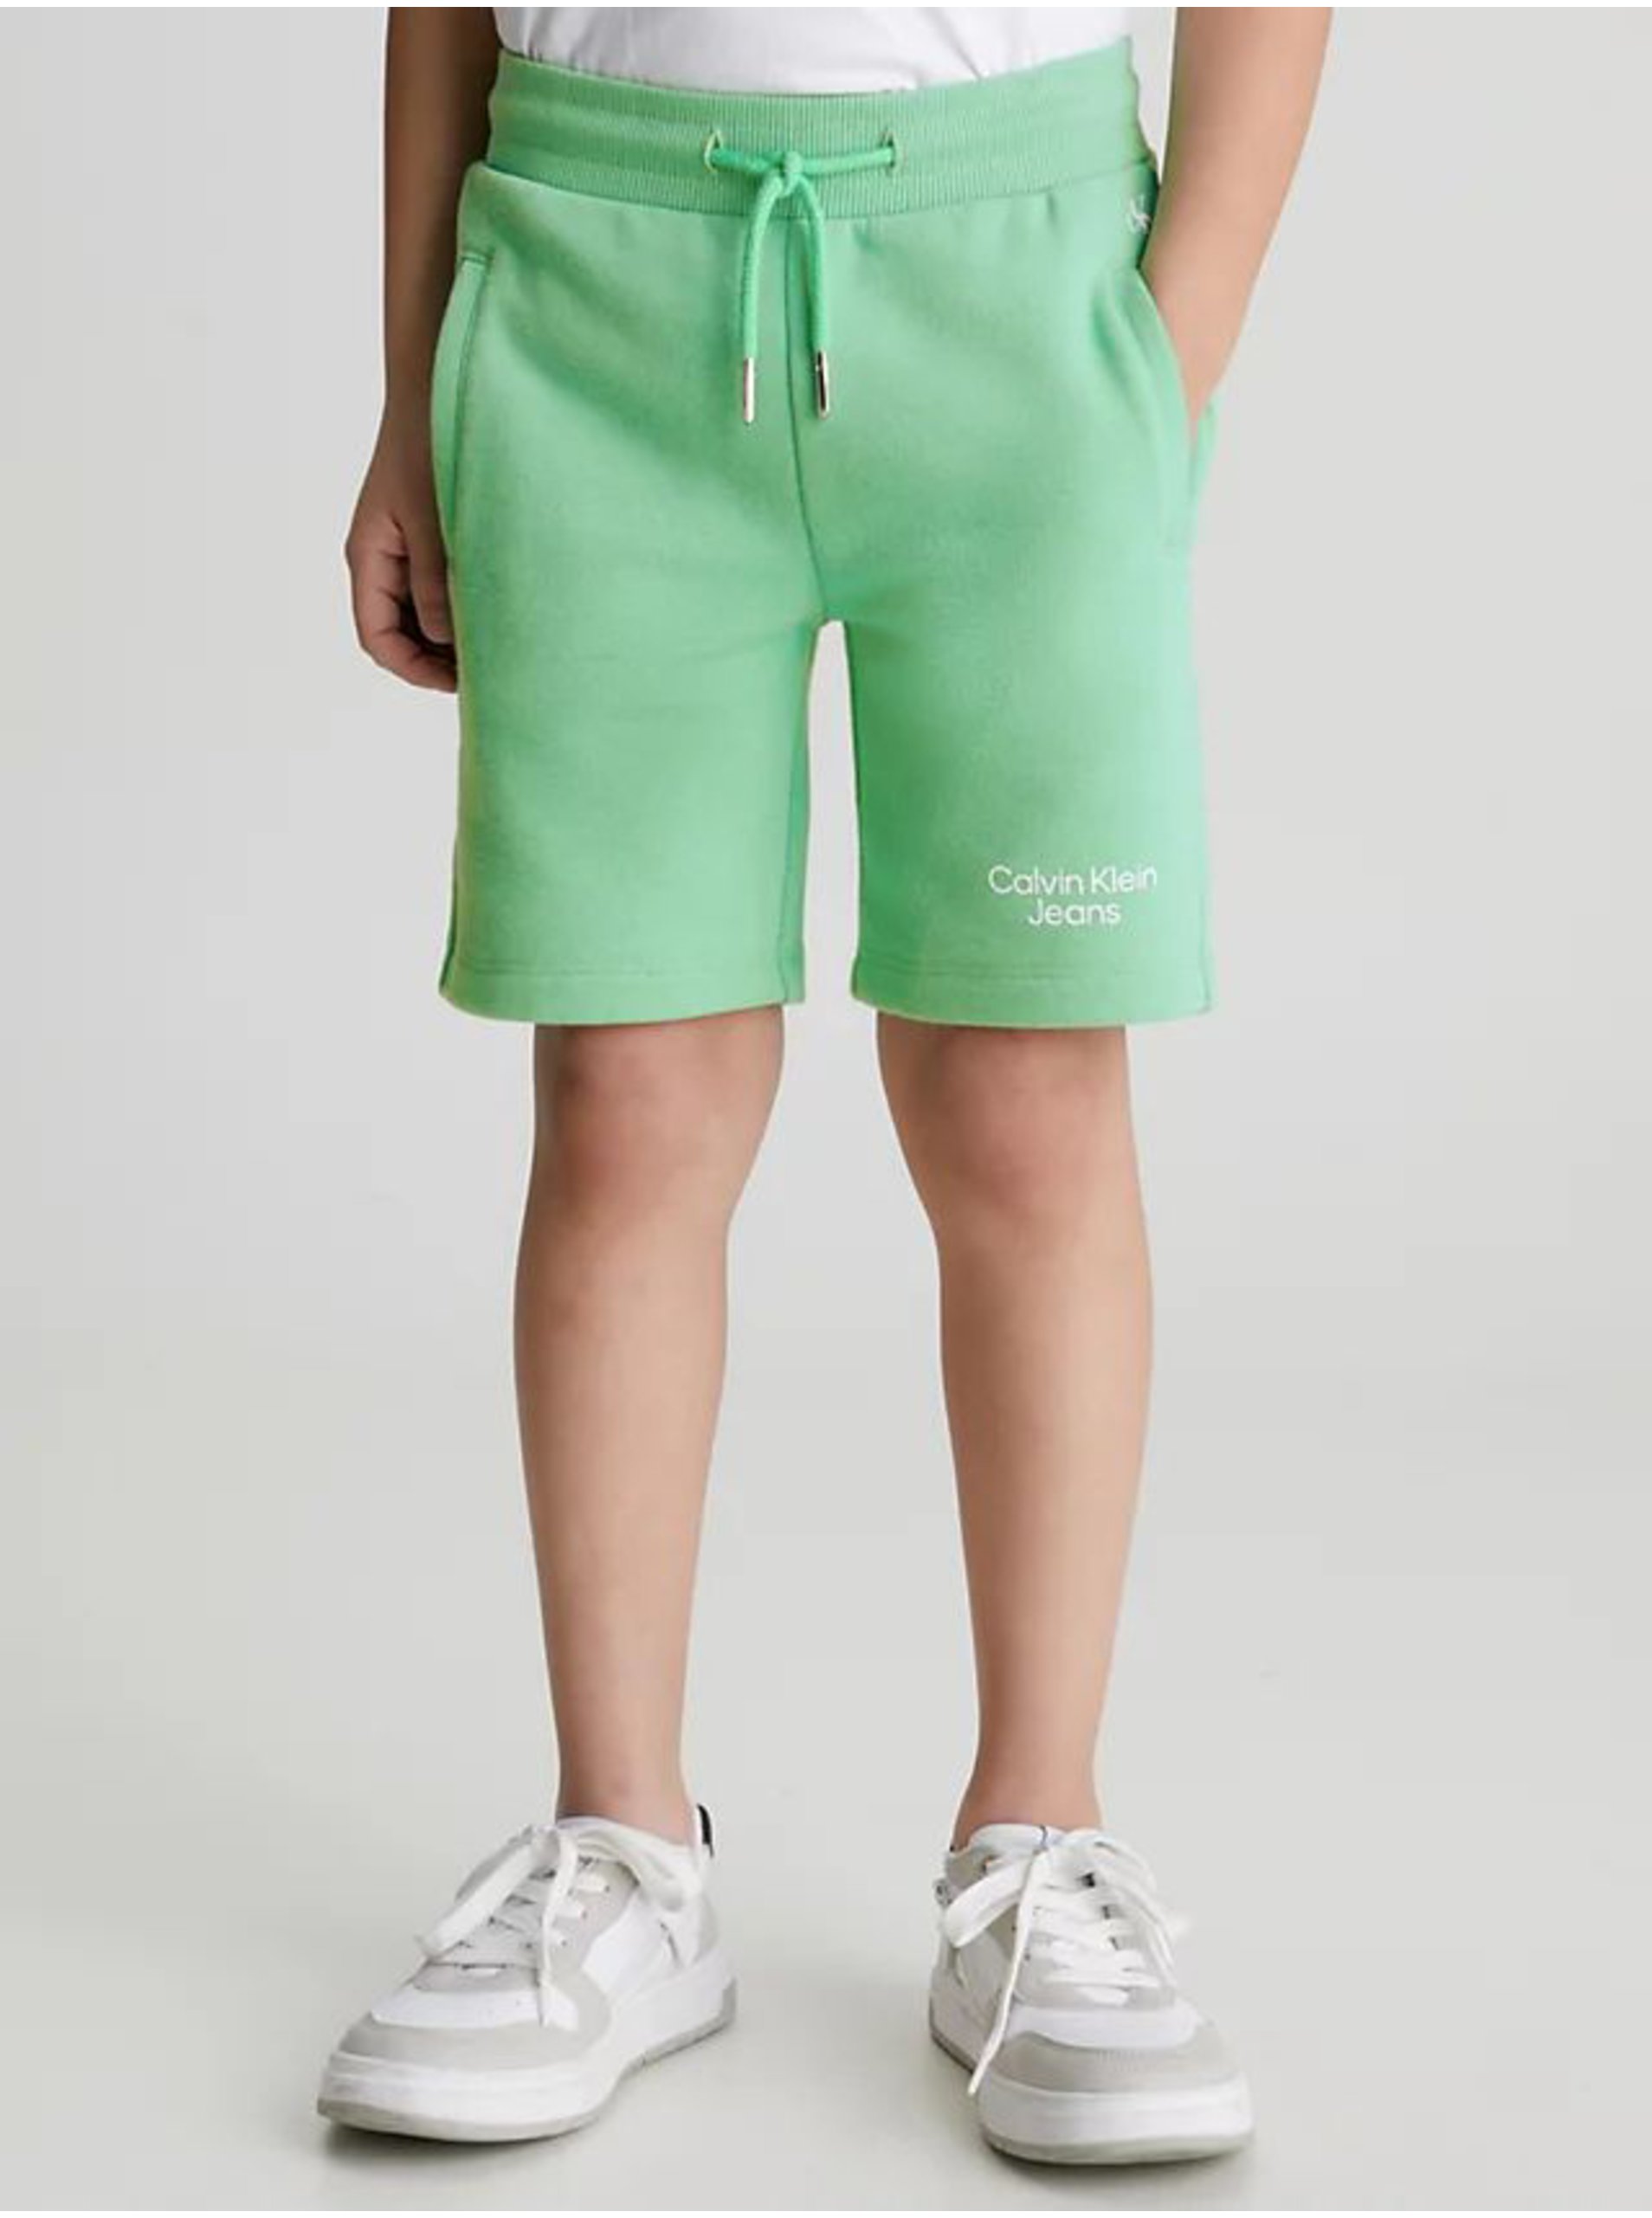 Lacno Svetlo zelené chlapčenské teplákové kraťasy Calvin Klein Jeans